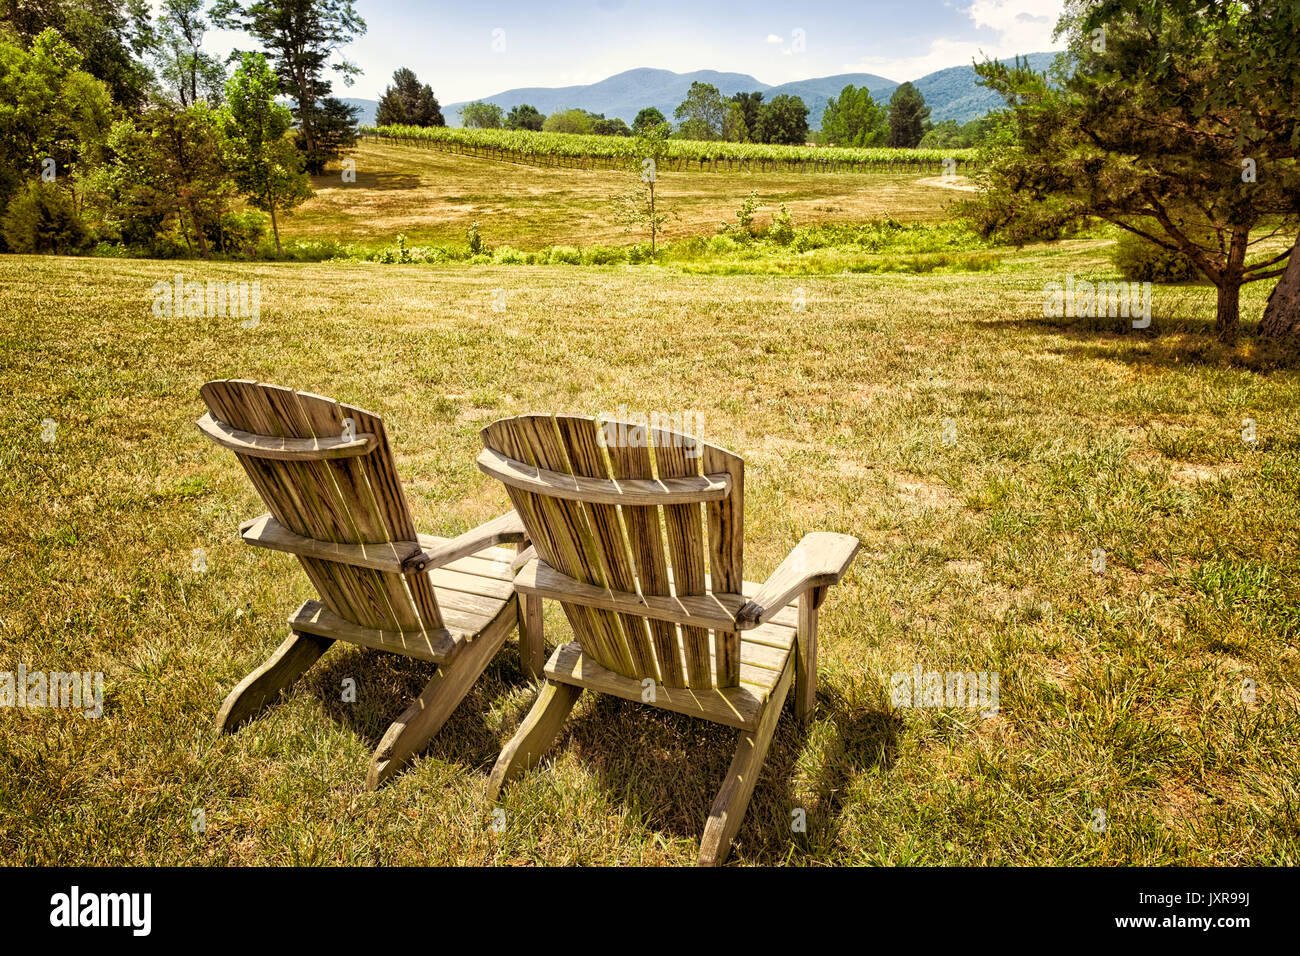 Par de sillas Adirondack mirando un viñedo con vistas al paisaje. Ubicación: Blue Ridge Mountains, Virginia Foto de stock